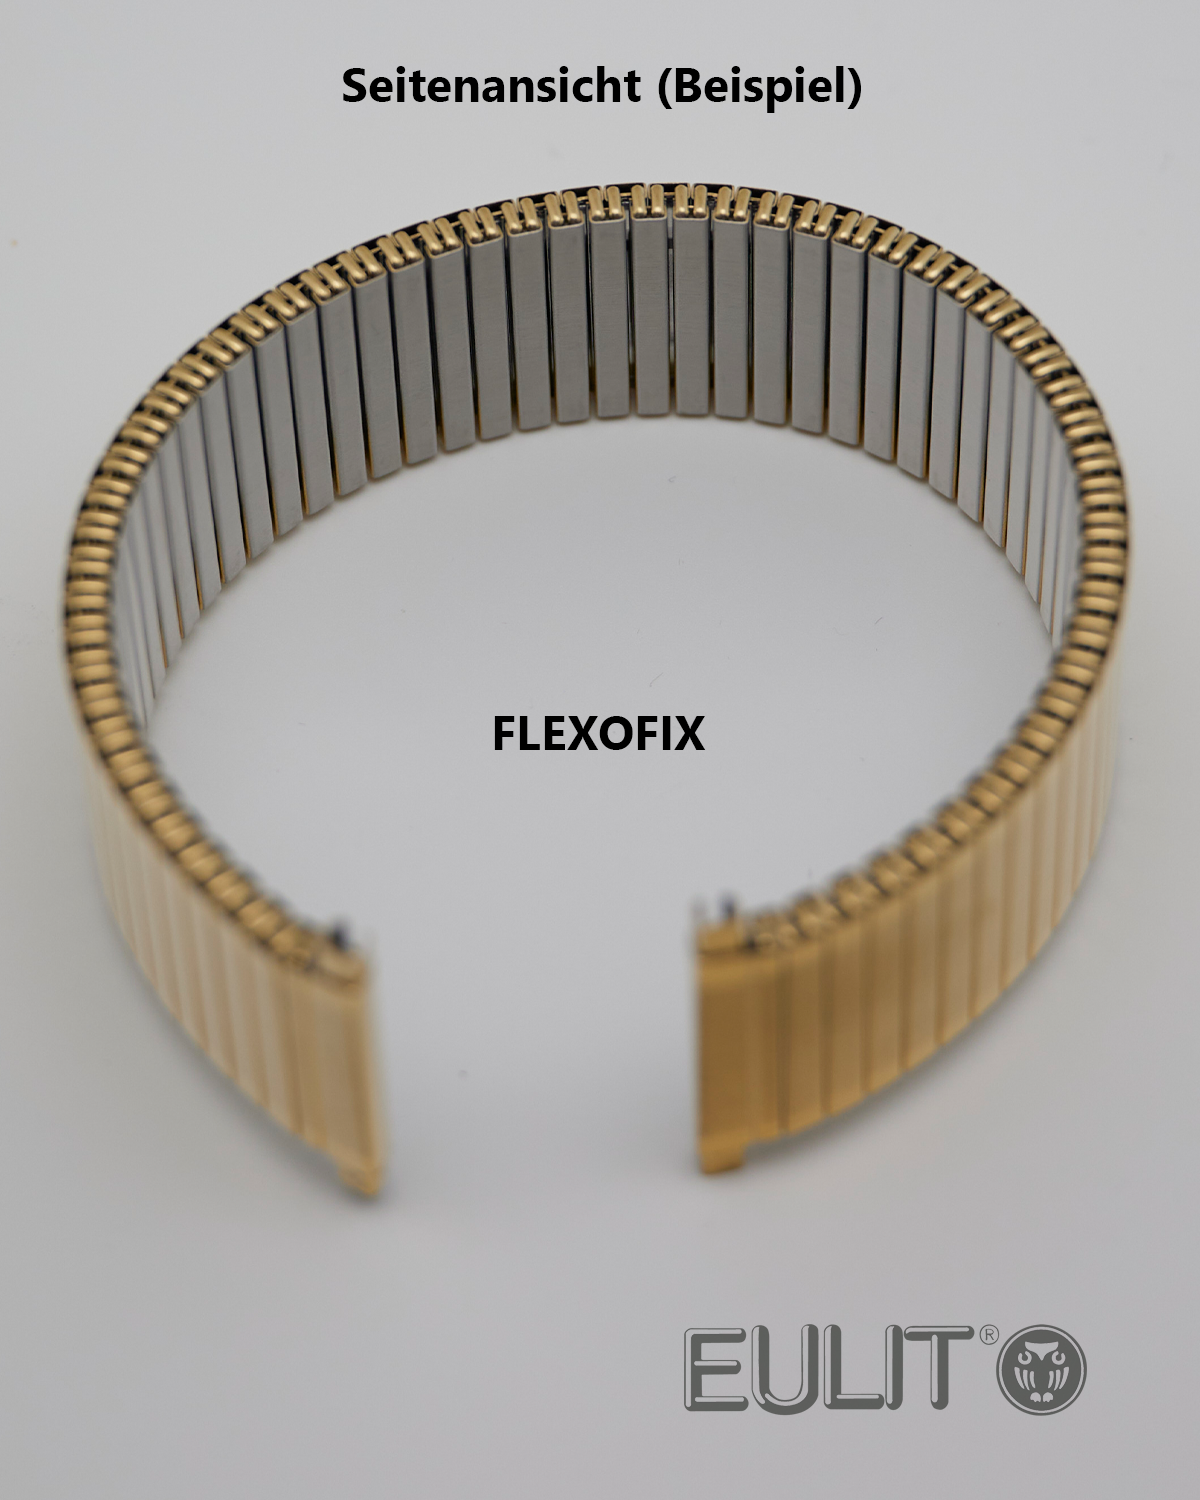 76-425001 EULIT FLEXOFIX 10-12 mm vergoldet